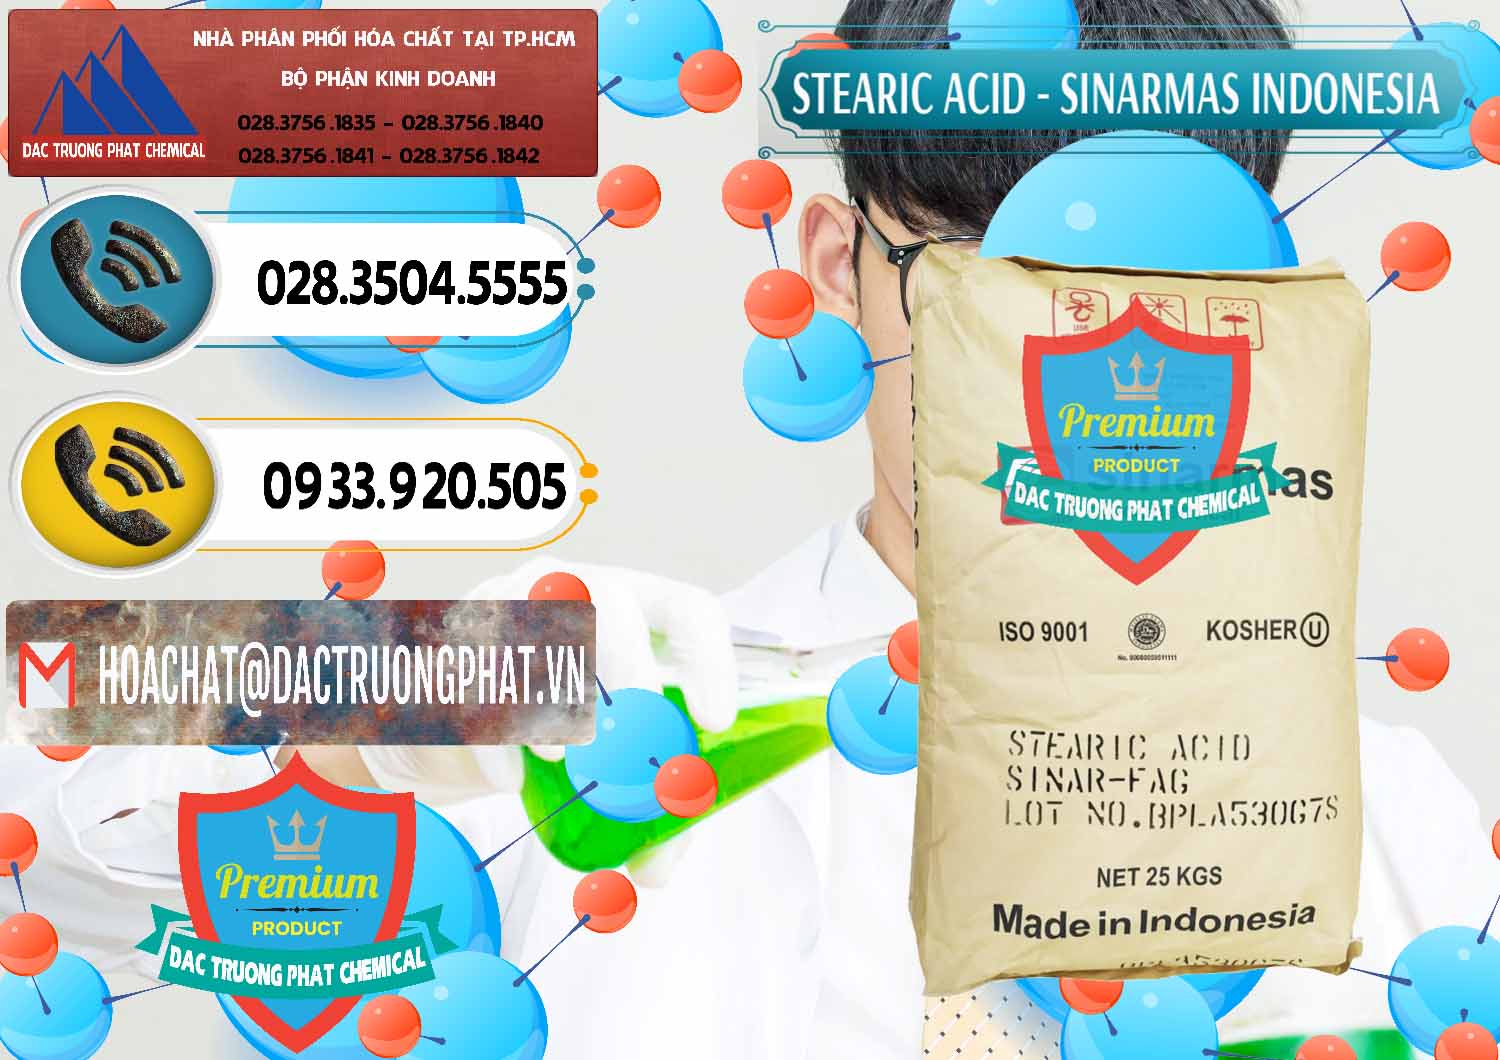 Nơi bán _ phân phối Axit Stearic - Stearic Acid Sinarmas Indonesia - 0389 - Cung cấp - bán hóa chất tại TP.HCM - hoachatdetnhuom.vn